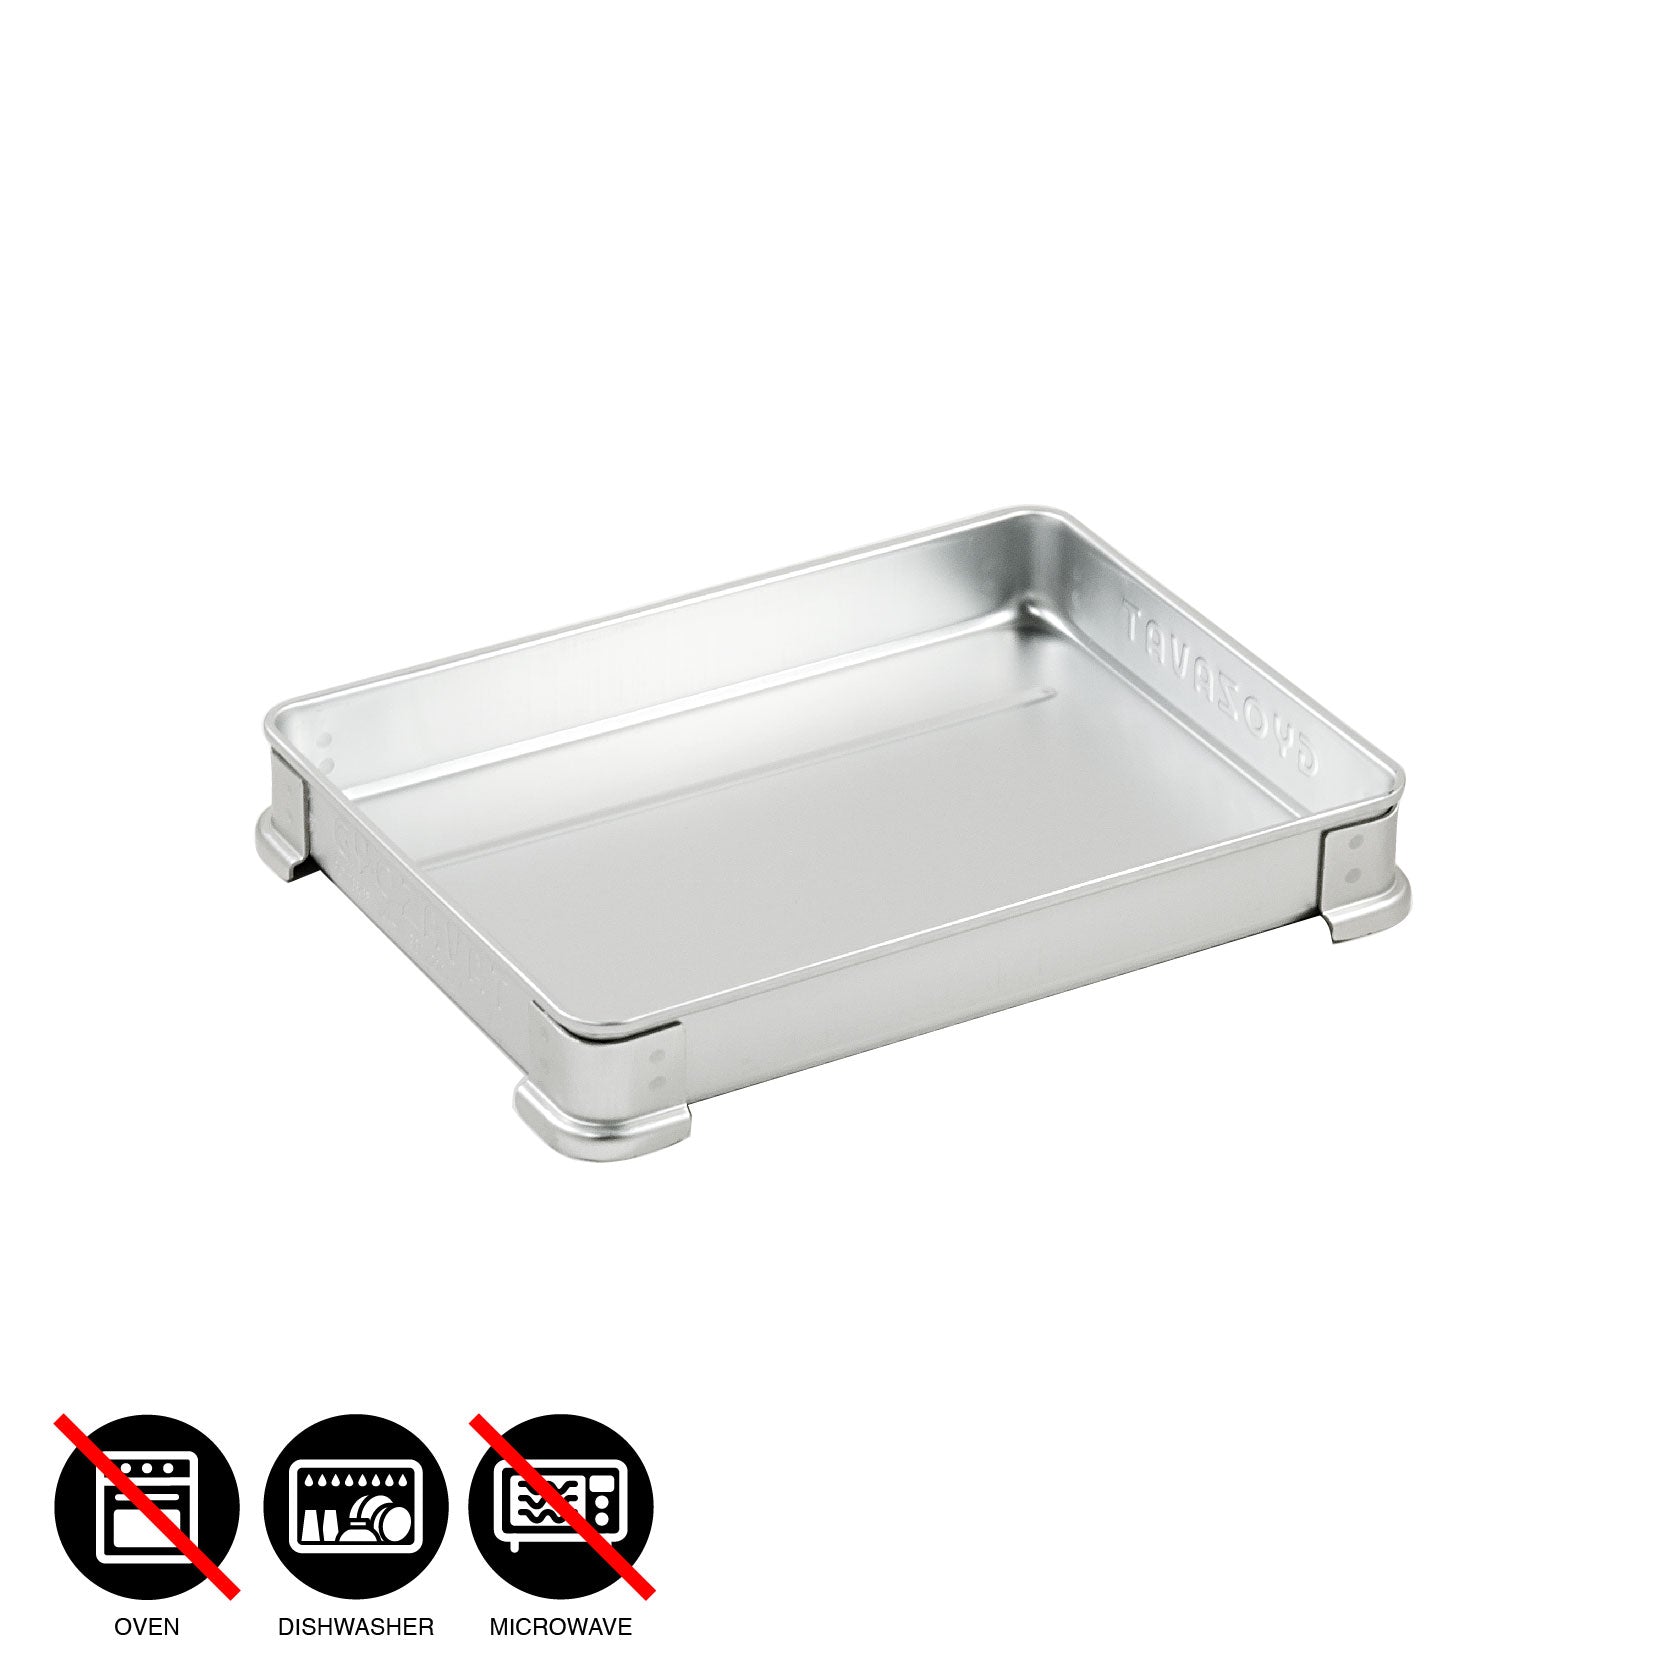 NAKAO aluminum tray for Gyoza / S - L